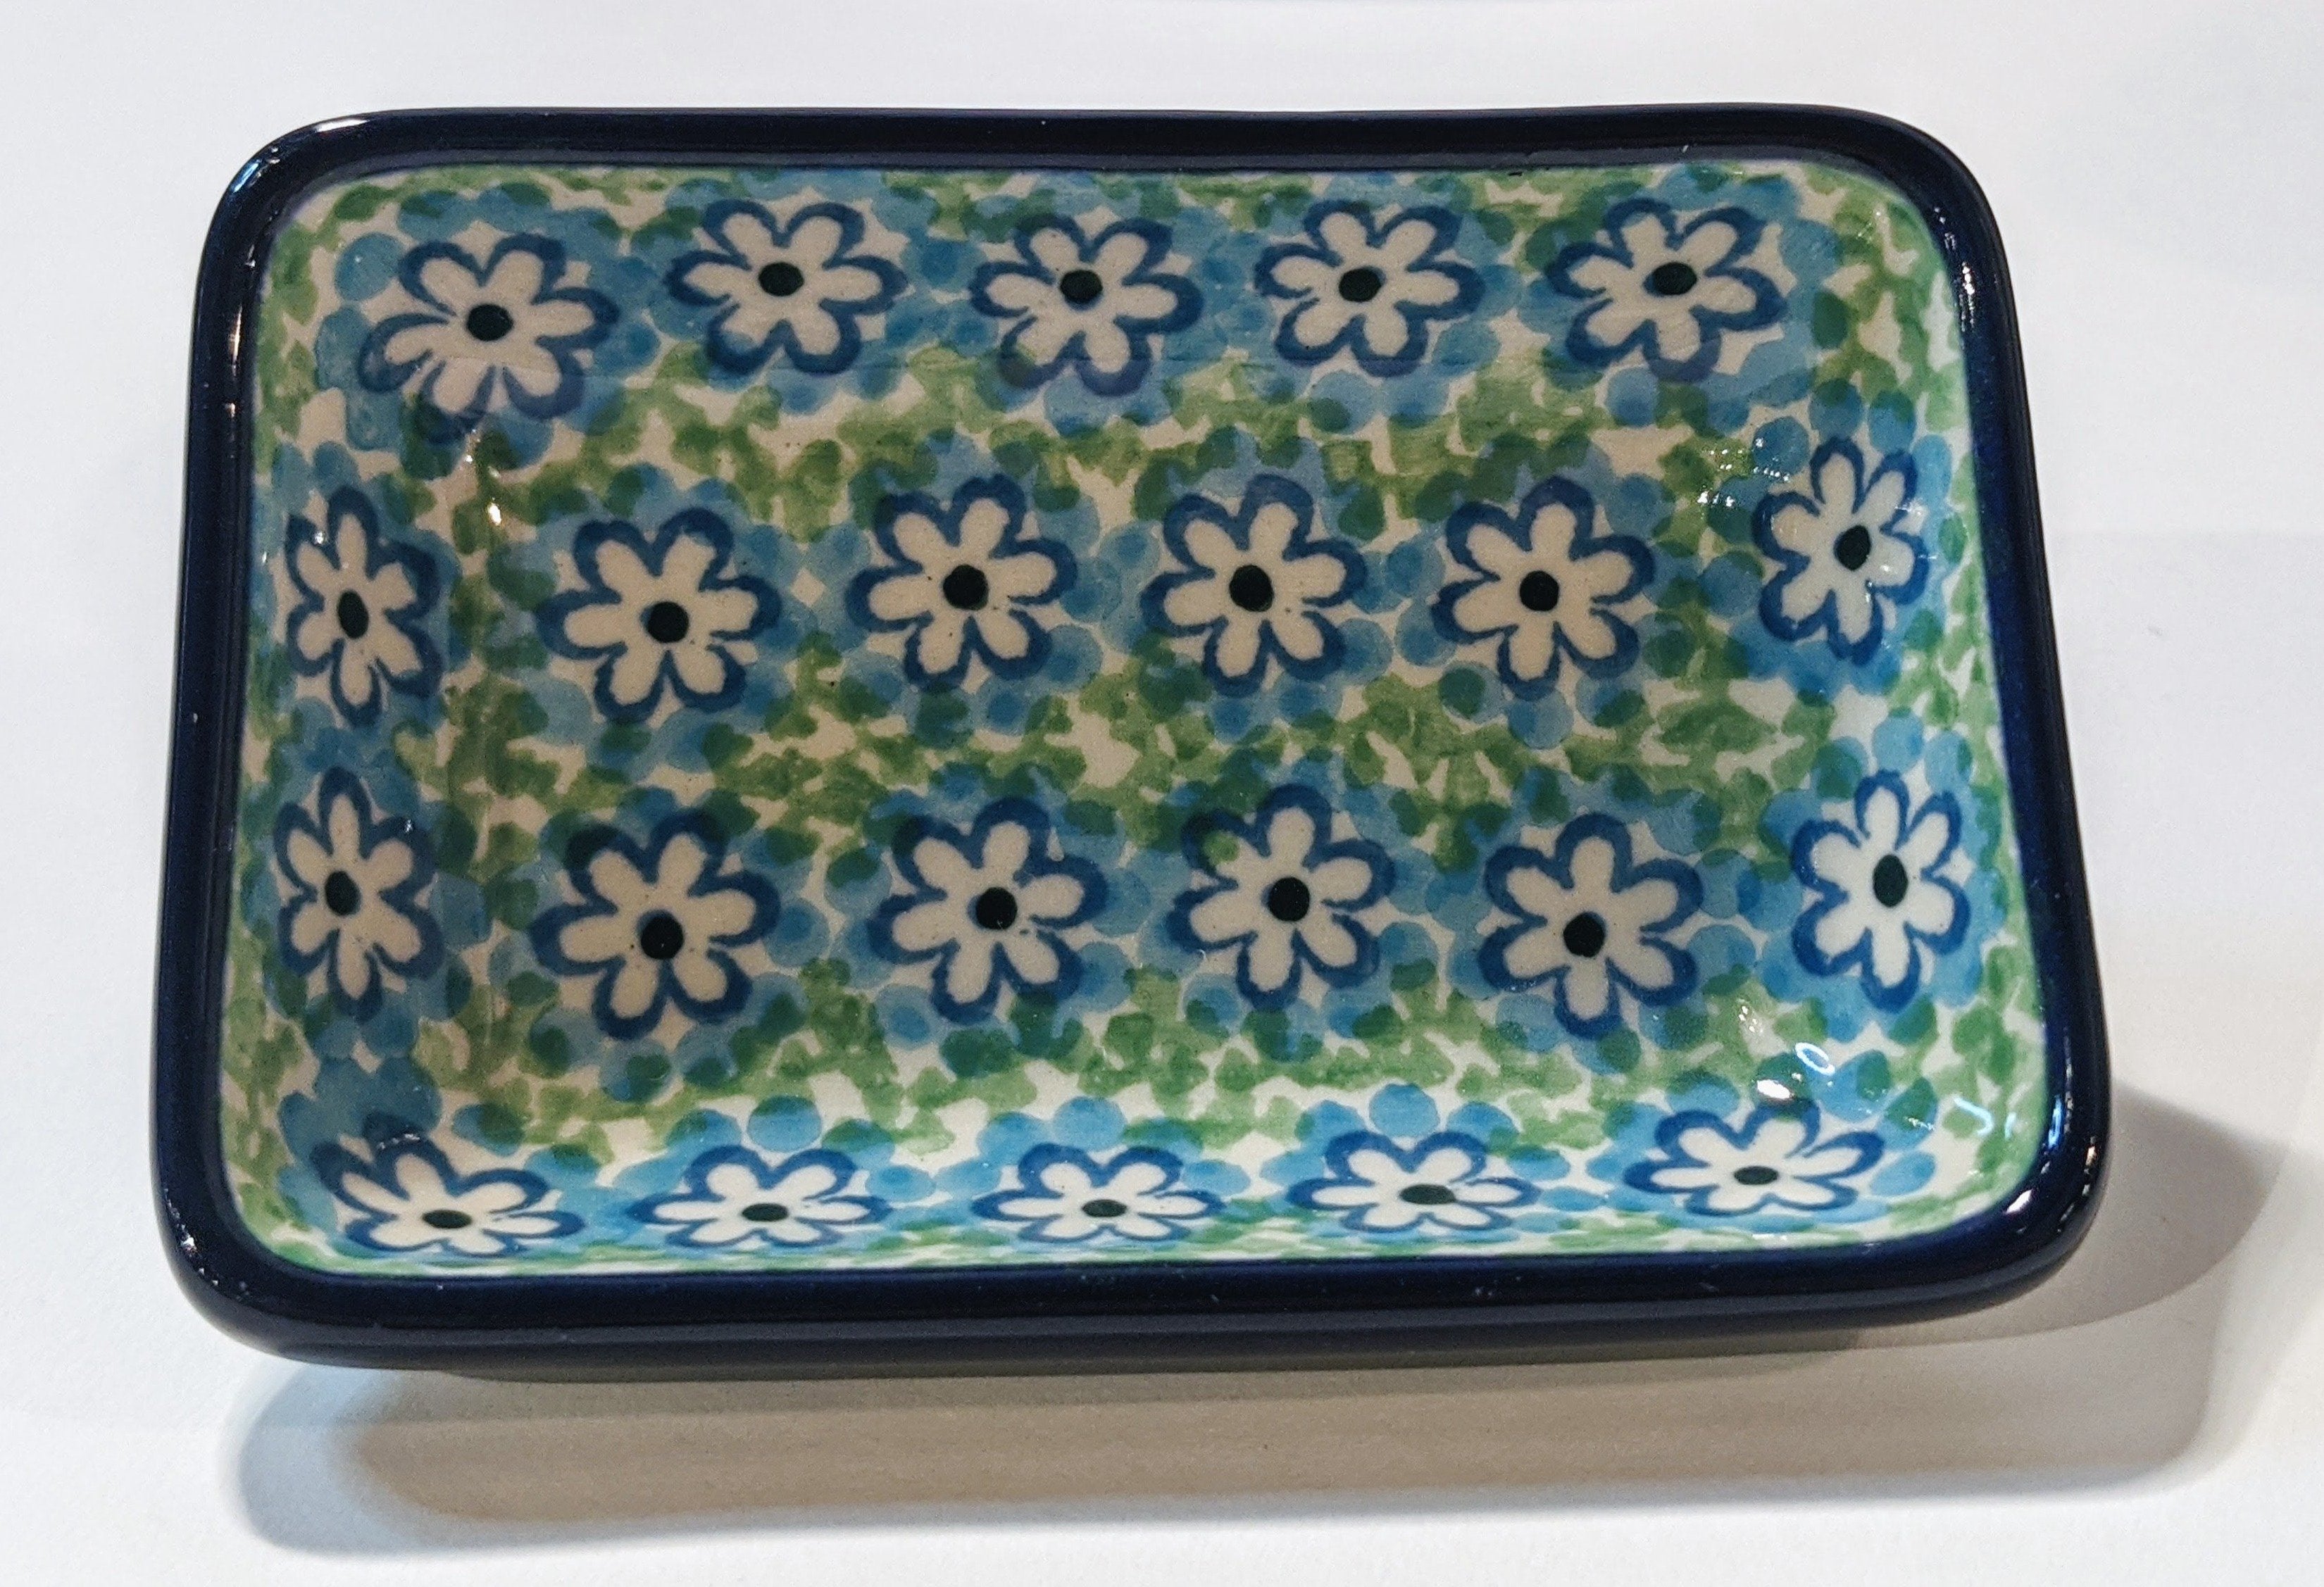 Turquoise Field Ceramika Artystyczna